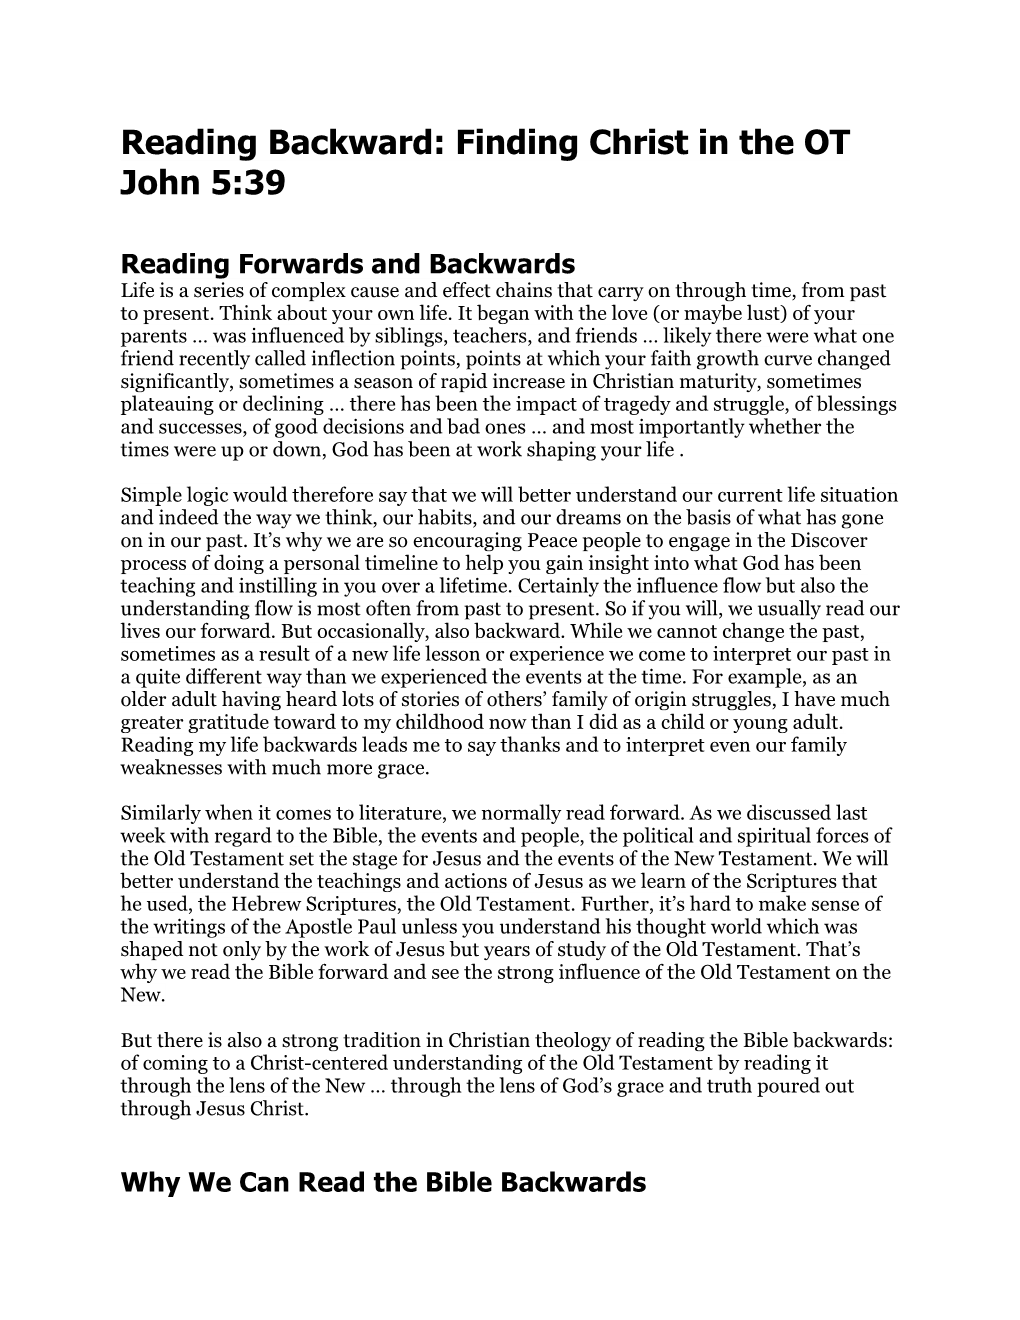 Reading Backward: Finding Christ in the OT John 5:39